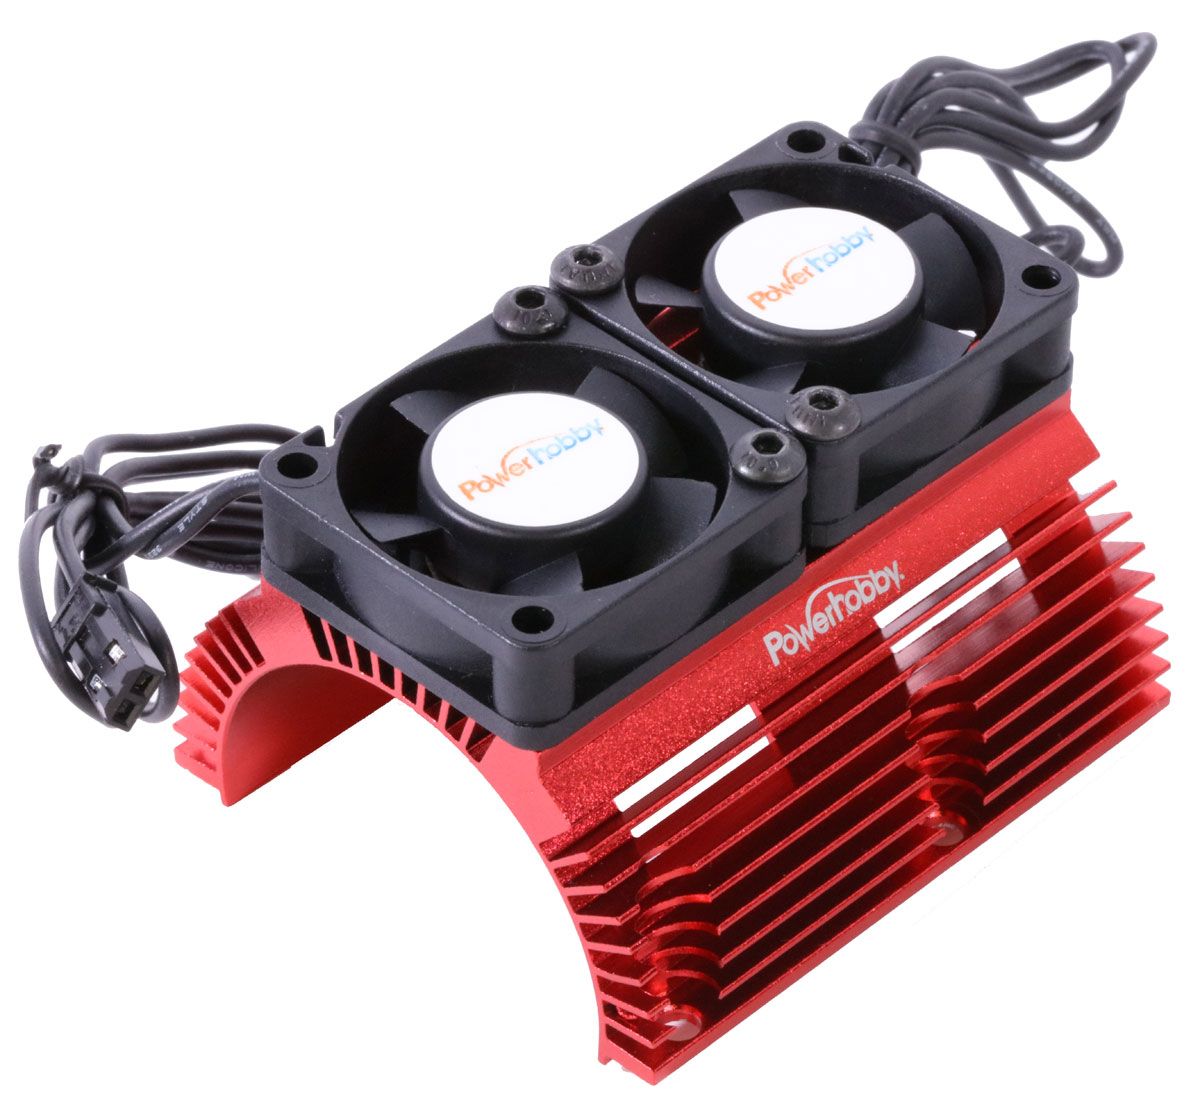 Disipador de calor Power Hobby con ventiladores Twin Turbo de alta velocidad (varios colores)